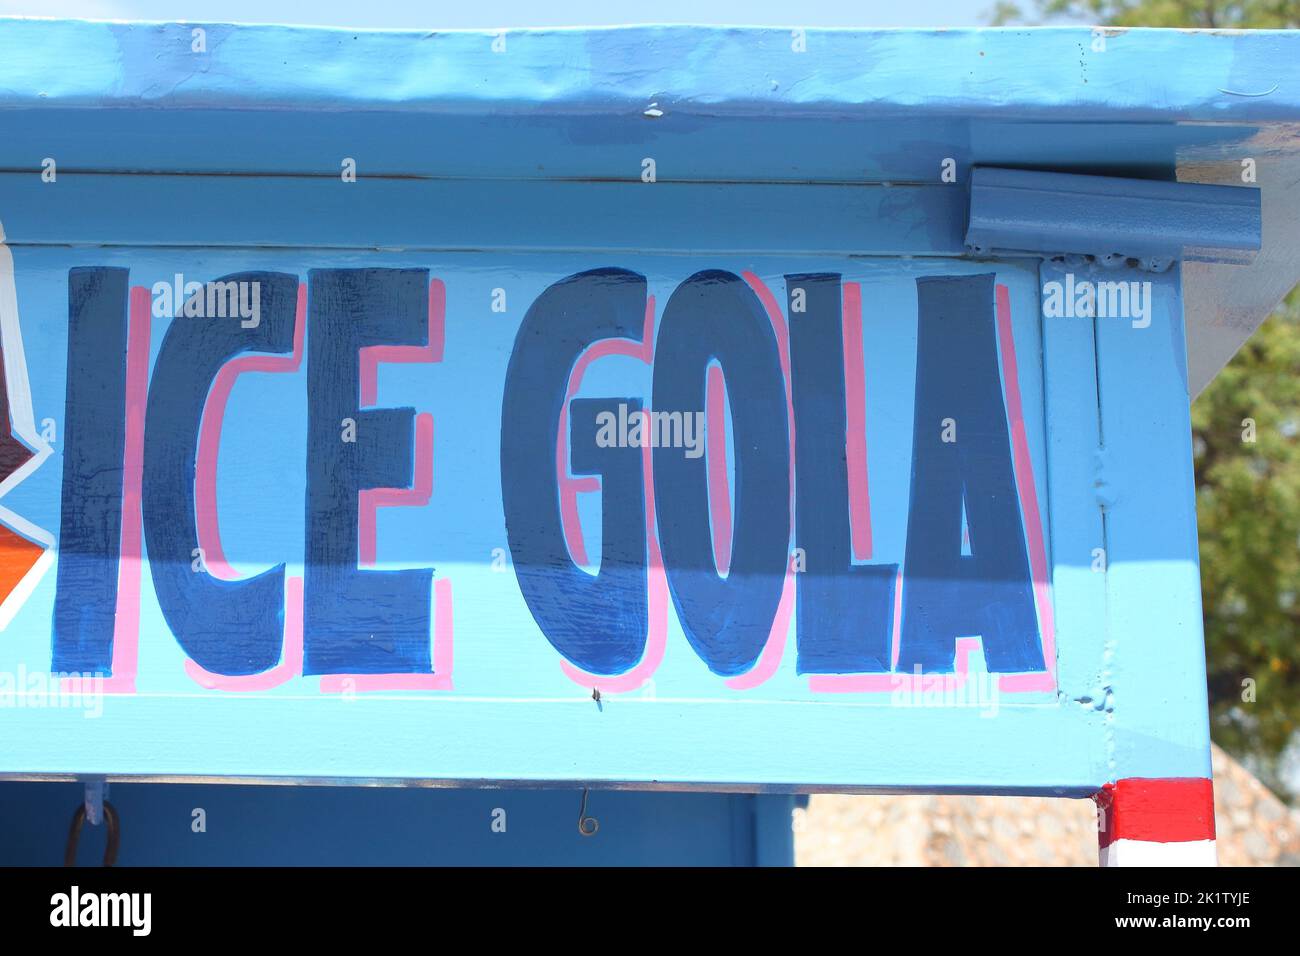 Die Inschrift, Zeichen des Eises gola - Eis auf einem Stand in der indischen Landschaft Stockfoto